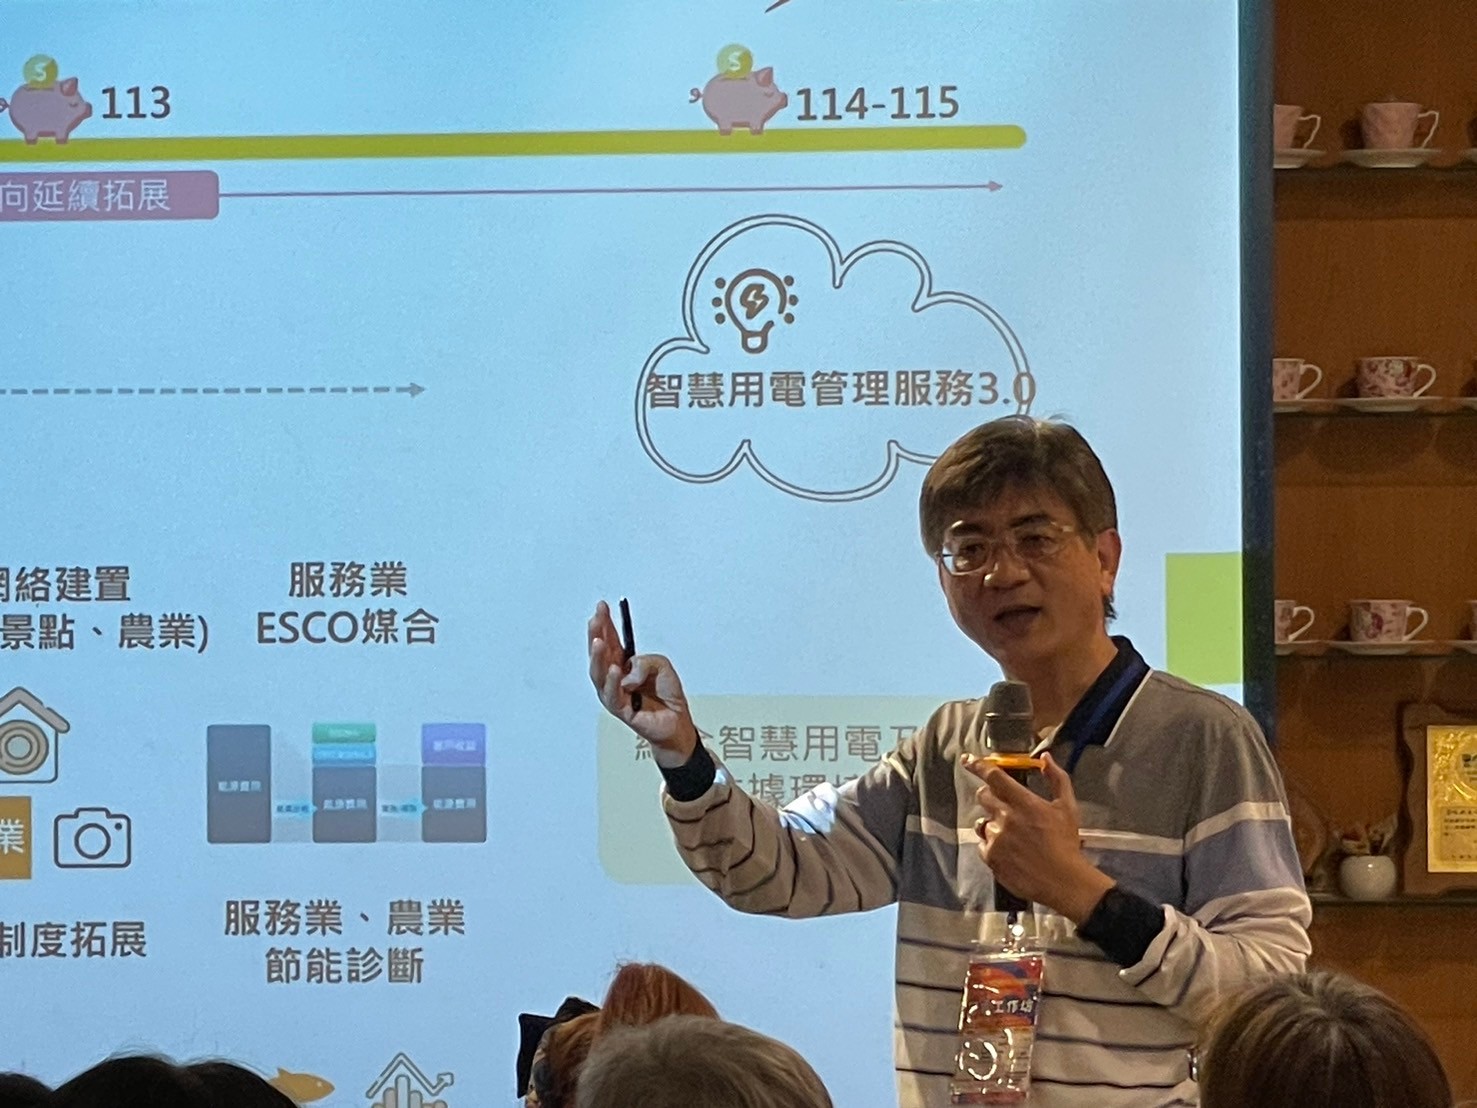 圖為計畫主持人、亞大商應系陳大正教授，說明節電計畫的背景與目標。